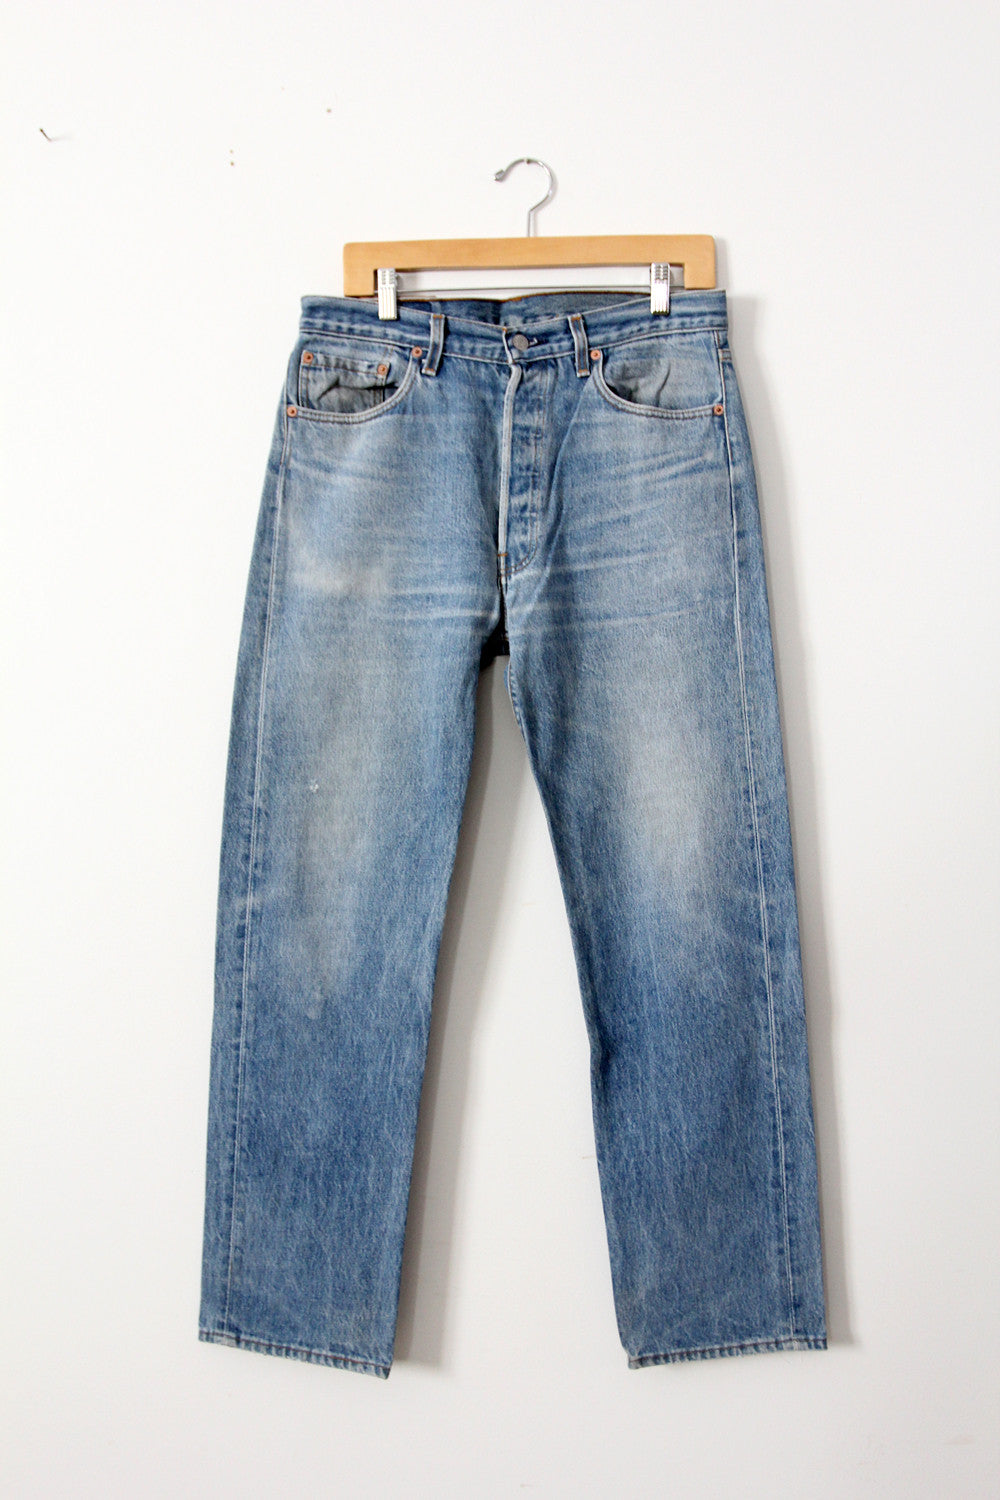 vintage 501xx Levi's jeans, 34 x 30